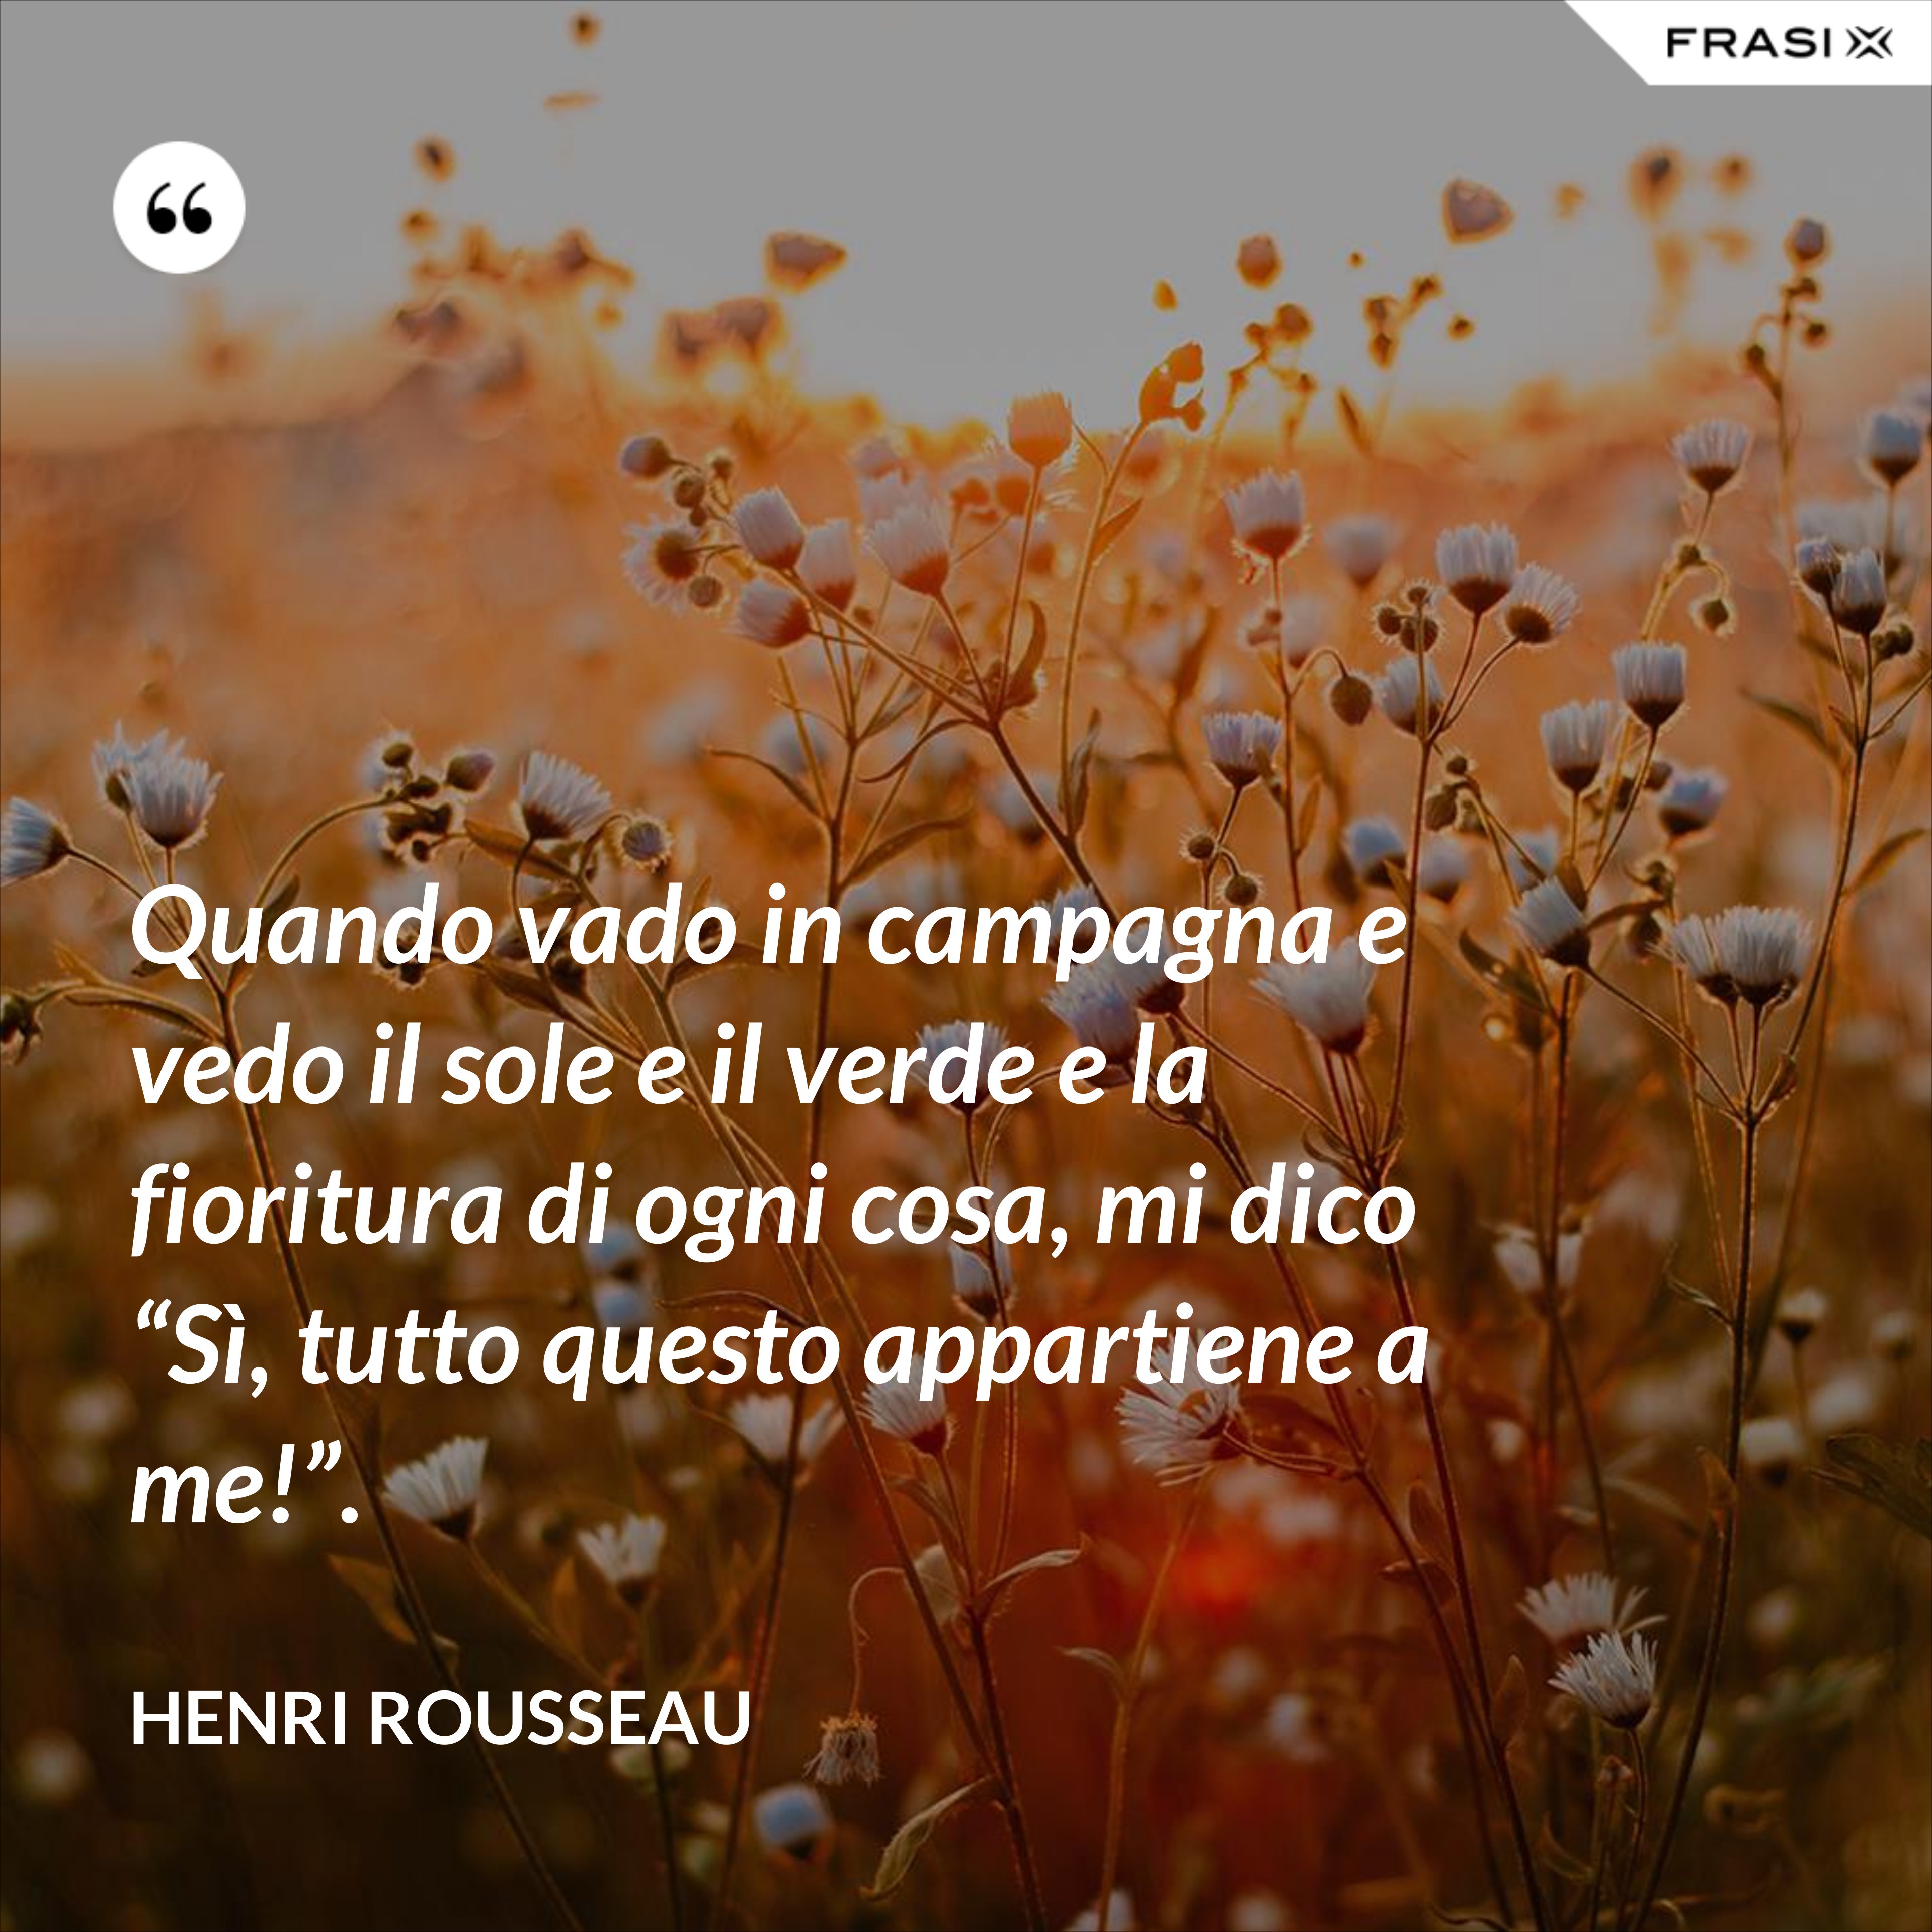 Quando vado in campagna e vedo il sole e il verde e la fioritura di ogni cosa, mi dico “Sì, tutto questo appartiene a me!”. - Henri Rousseau